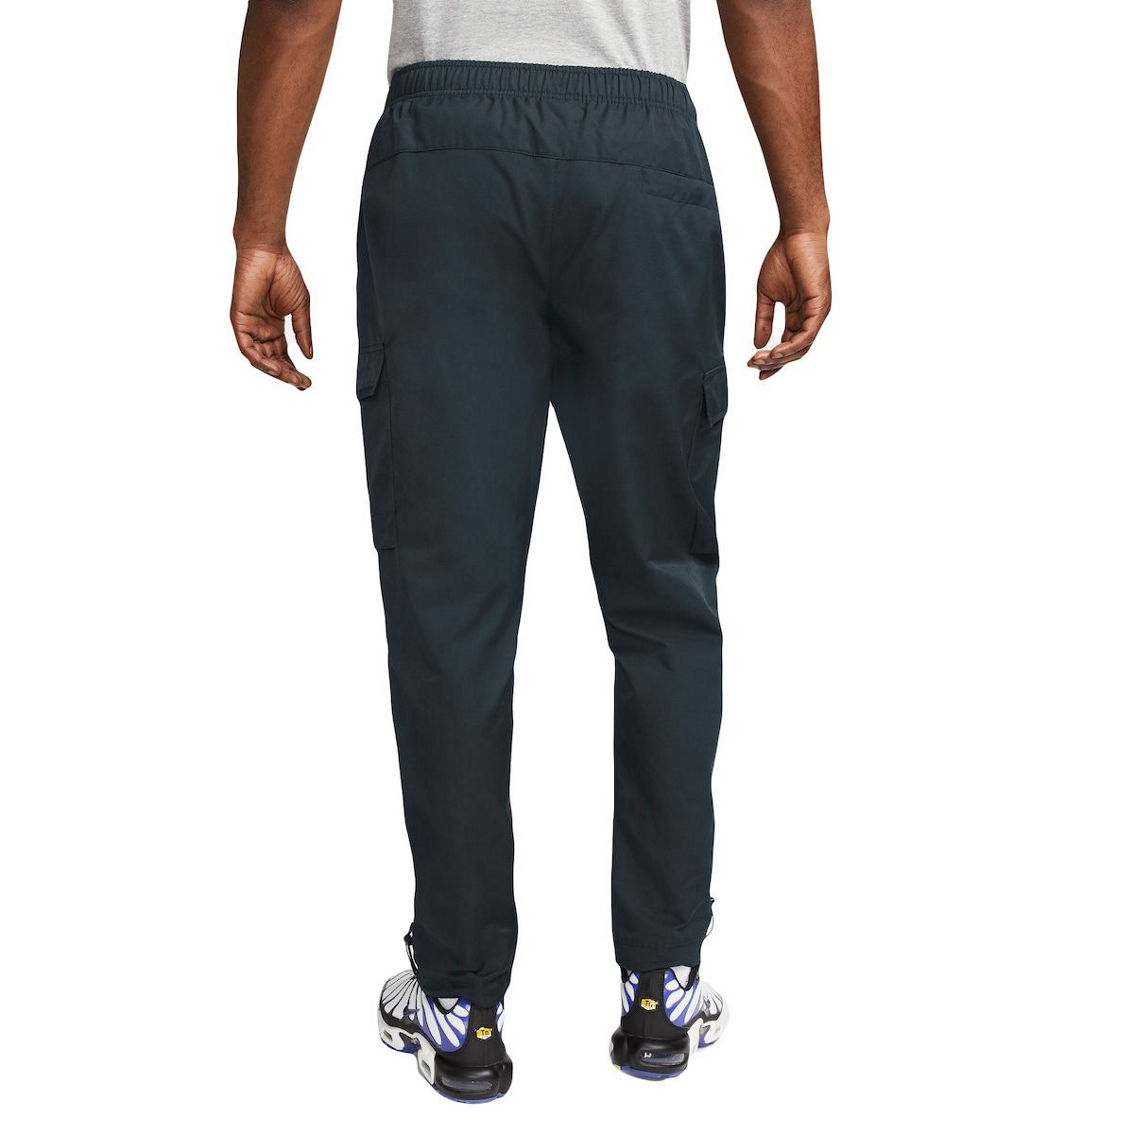 Nike Men's Blue Barcelona Woven Pants - Image 3 of 4